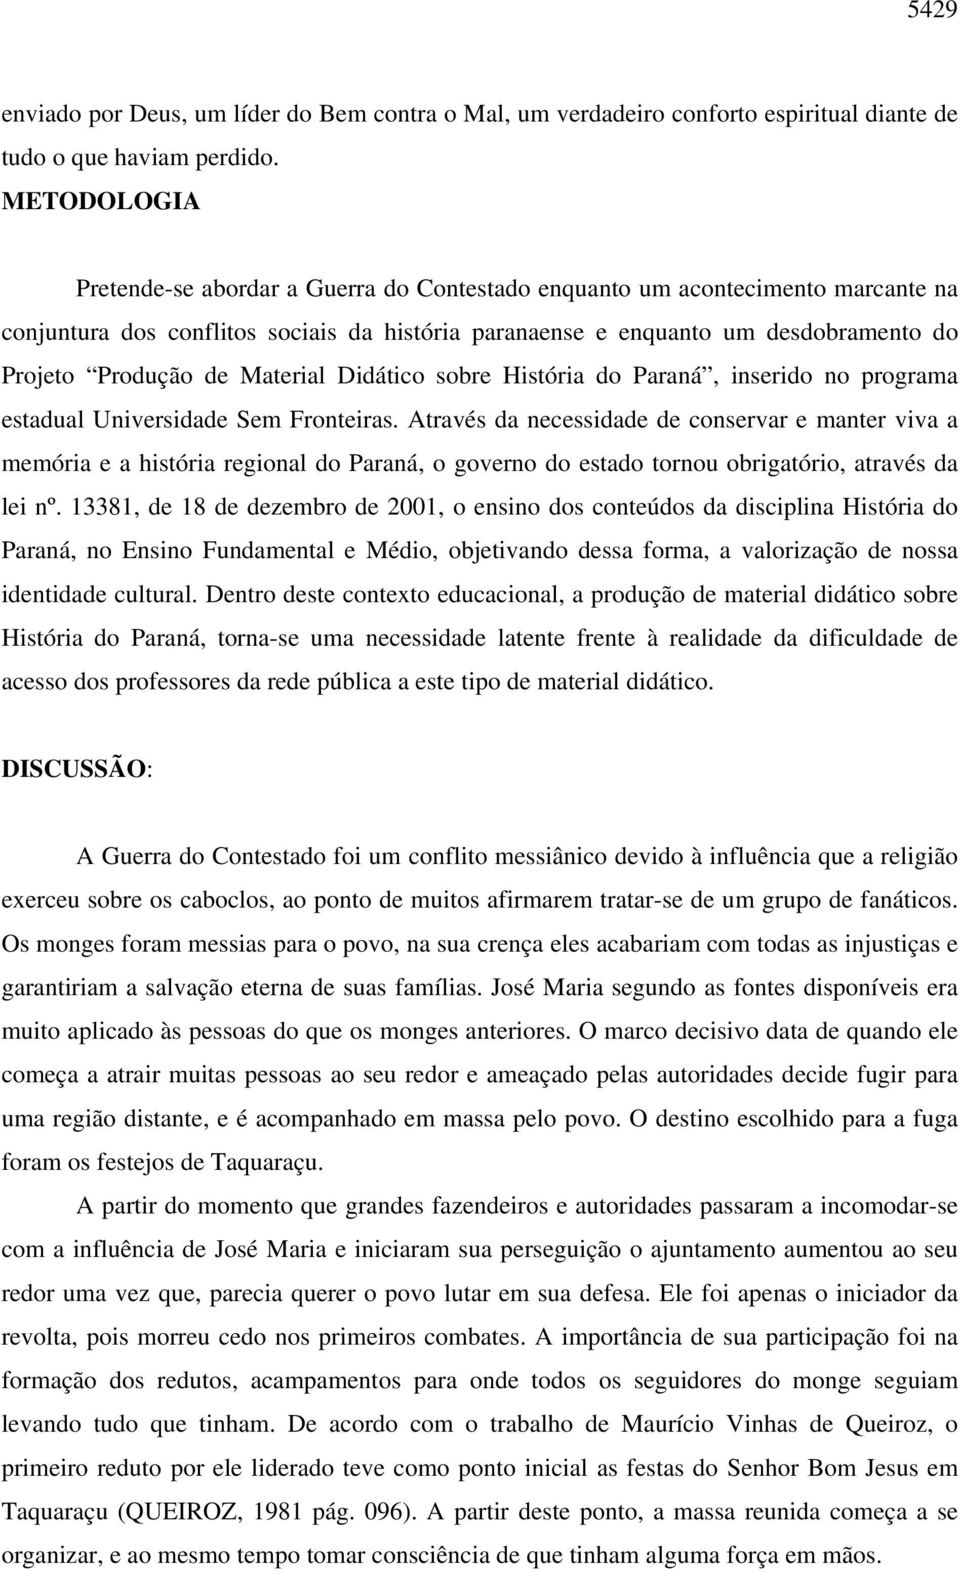 Material Didático sobre História do Paraná, inserido no programa estadual Universidade Sem Fronteiras.